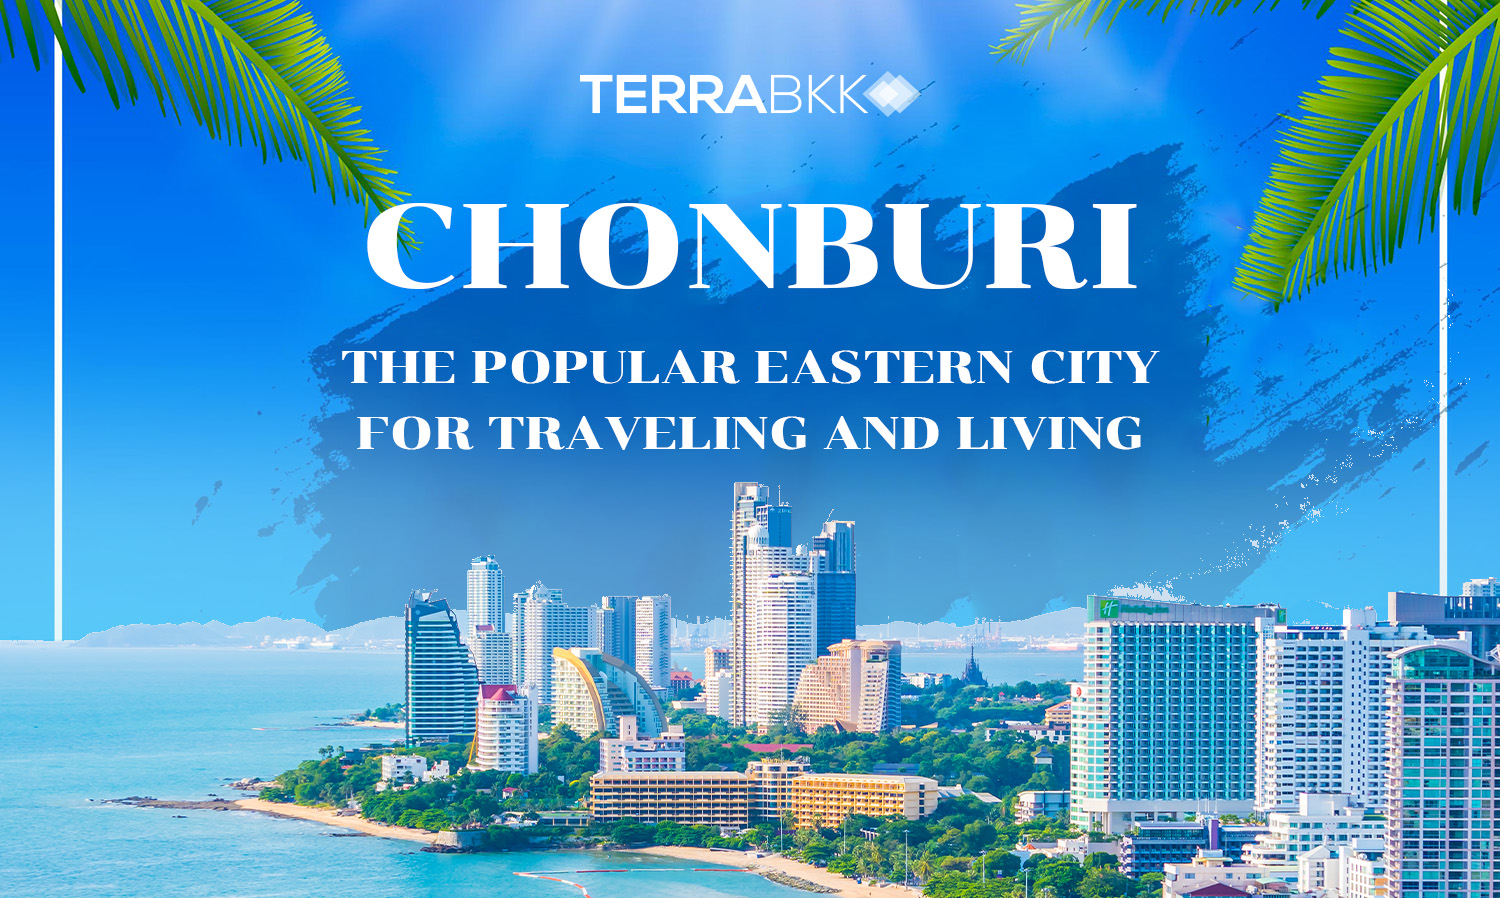 ชลบุรี เมืองท่องเที่ยวชื่อดังฝั่งตะวันออกของไทย ทำเลที่พักอาศัยยอดนิยมของชาวต่างชาติ